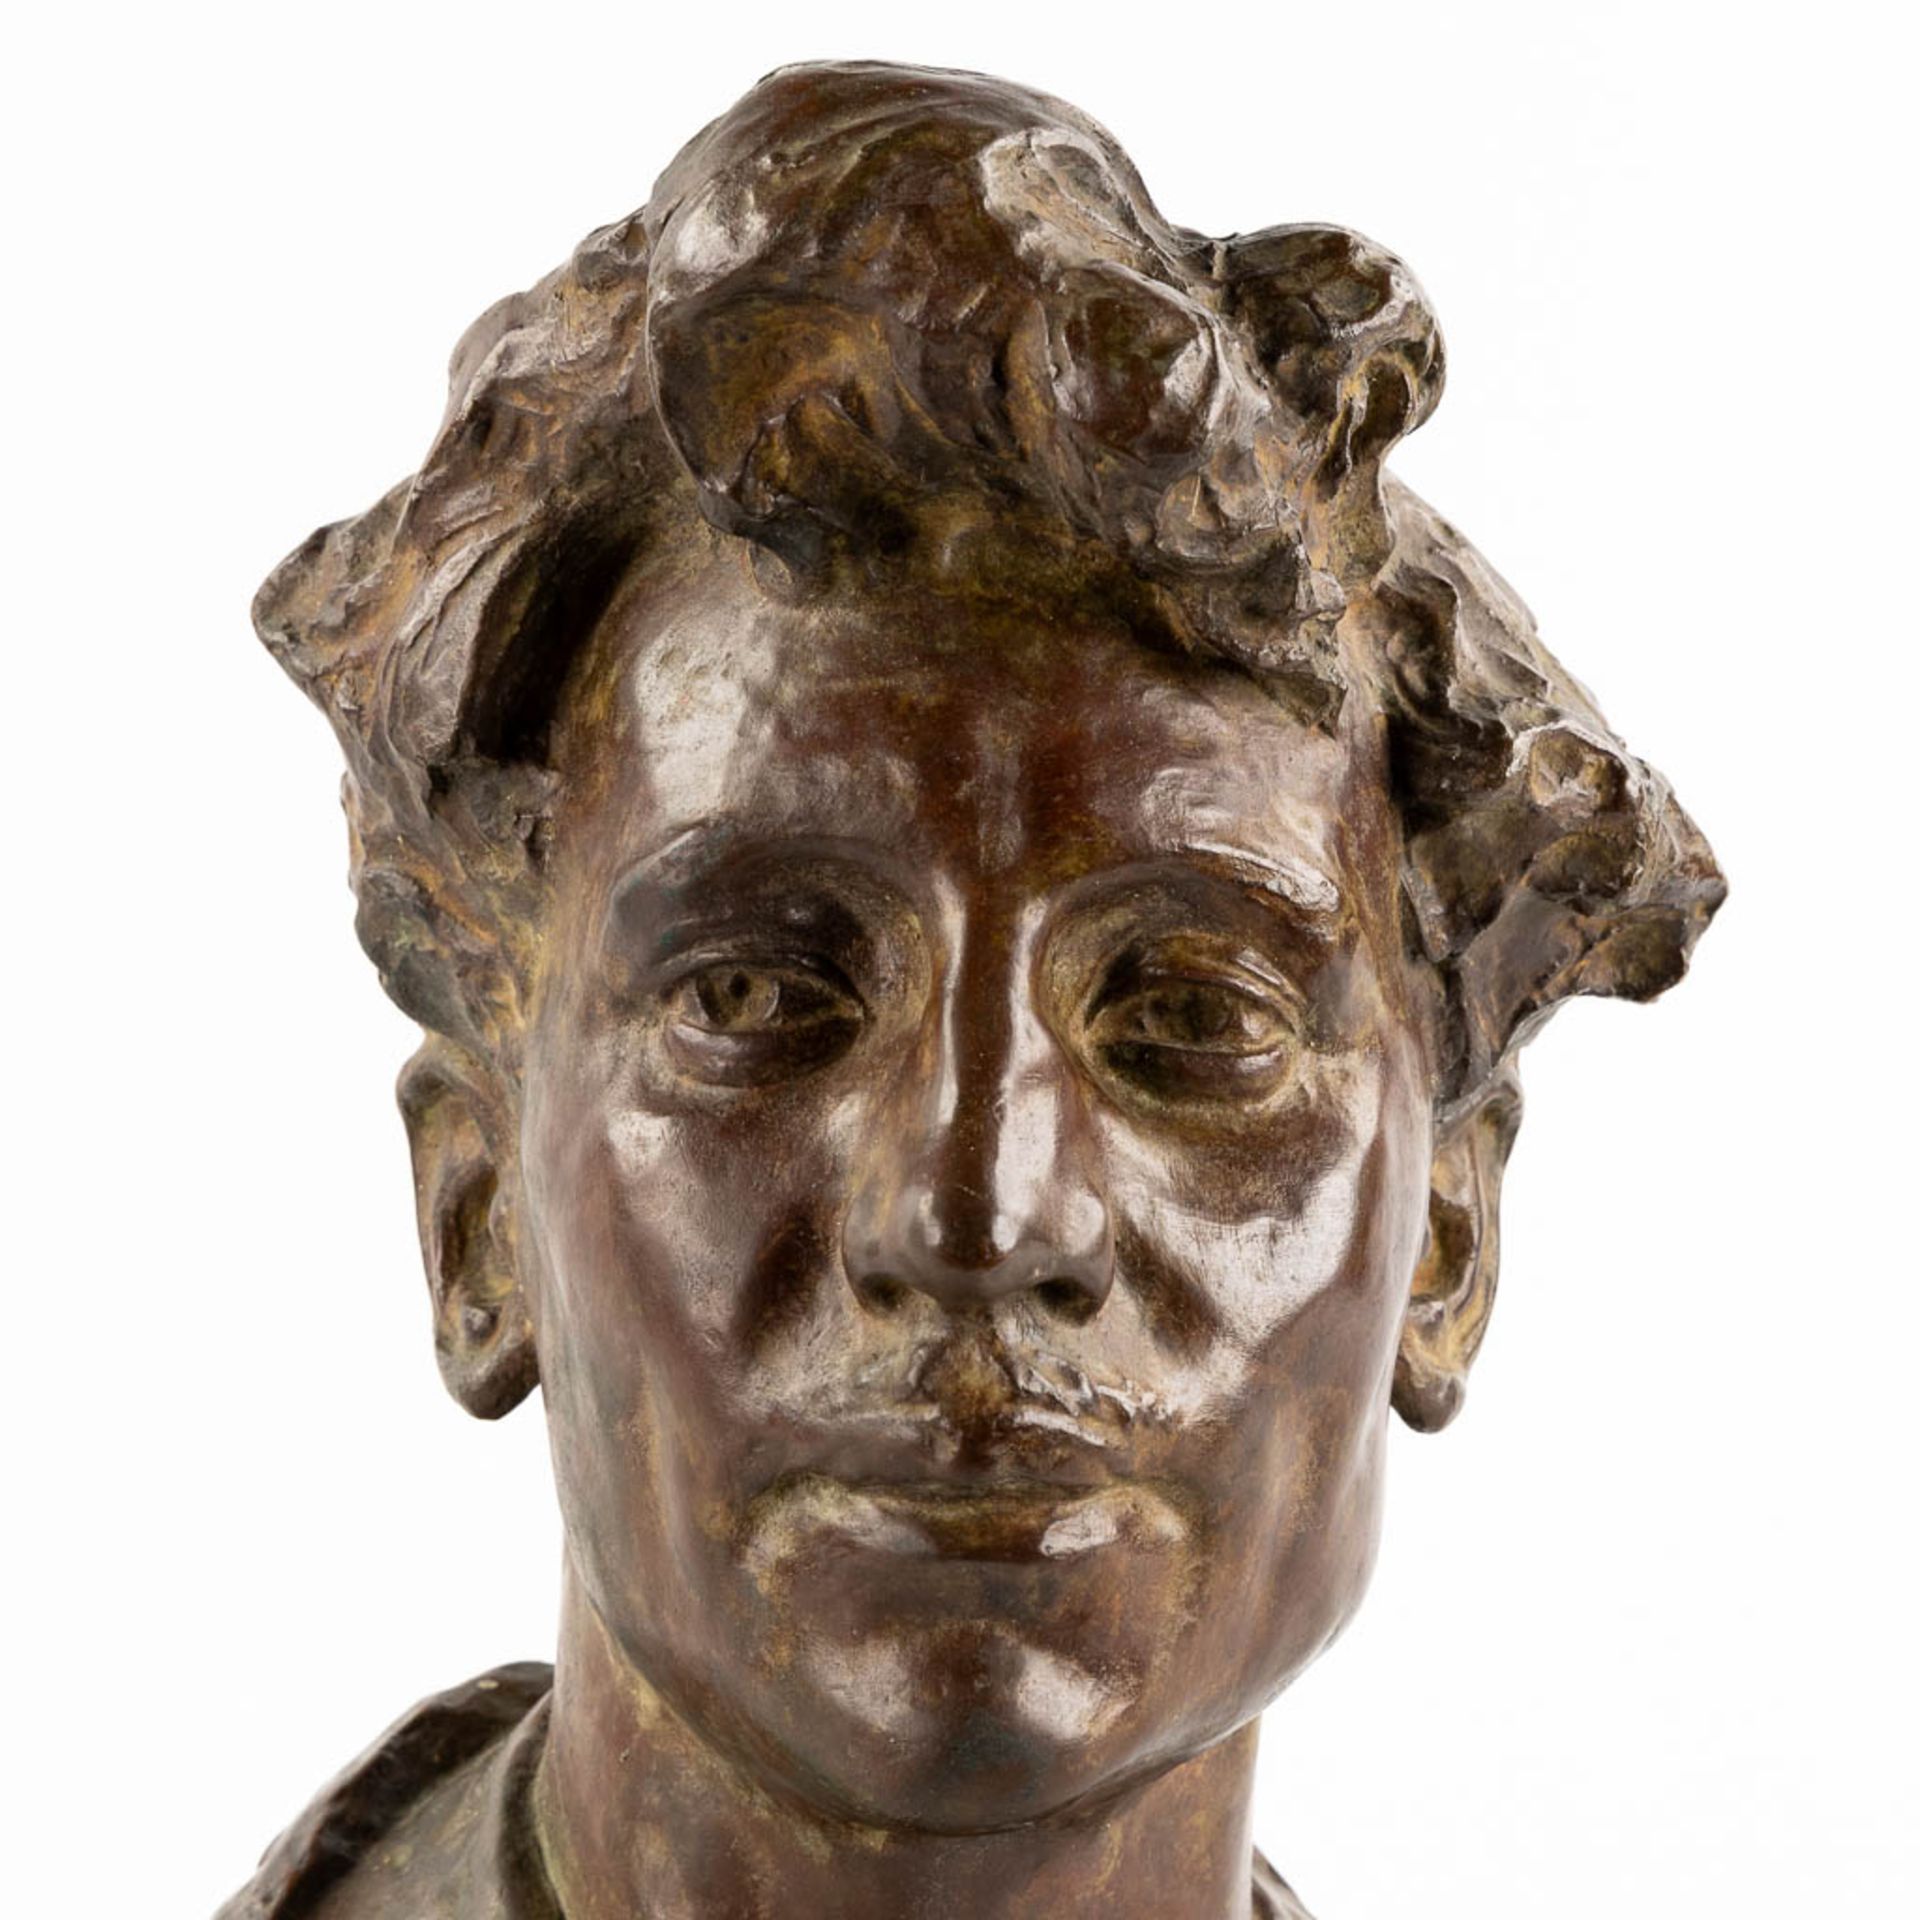 War VAN ASTEN (1888-1958) 'Buste of Alfons Blomme' patinated bronze. (L:27 x W:25 x H:40 cm) - Image 6 of 10